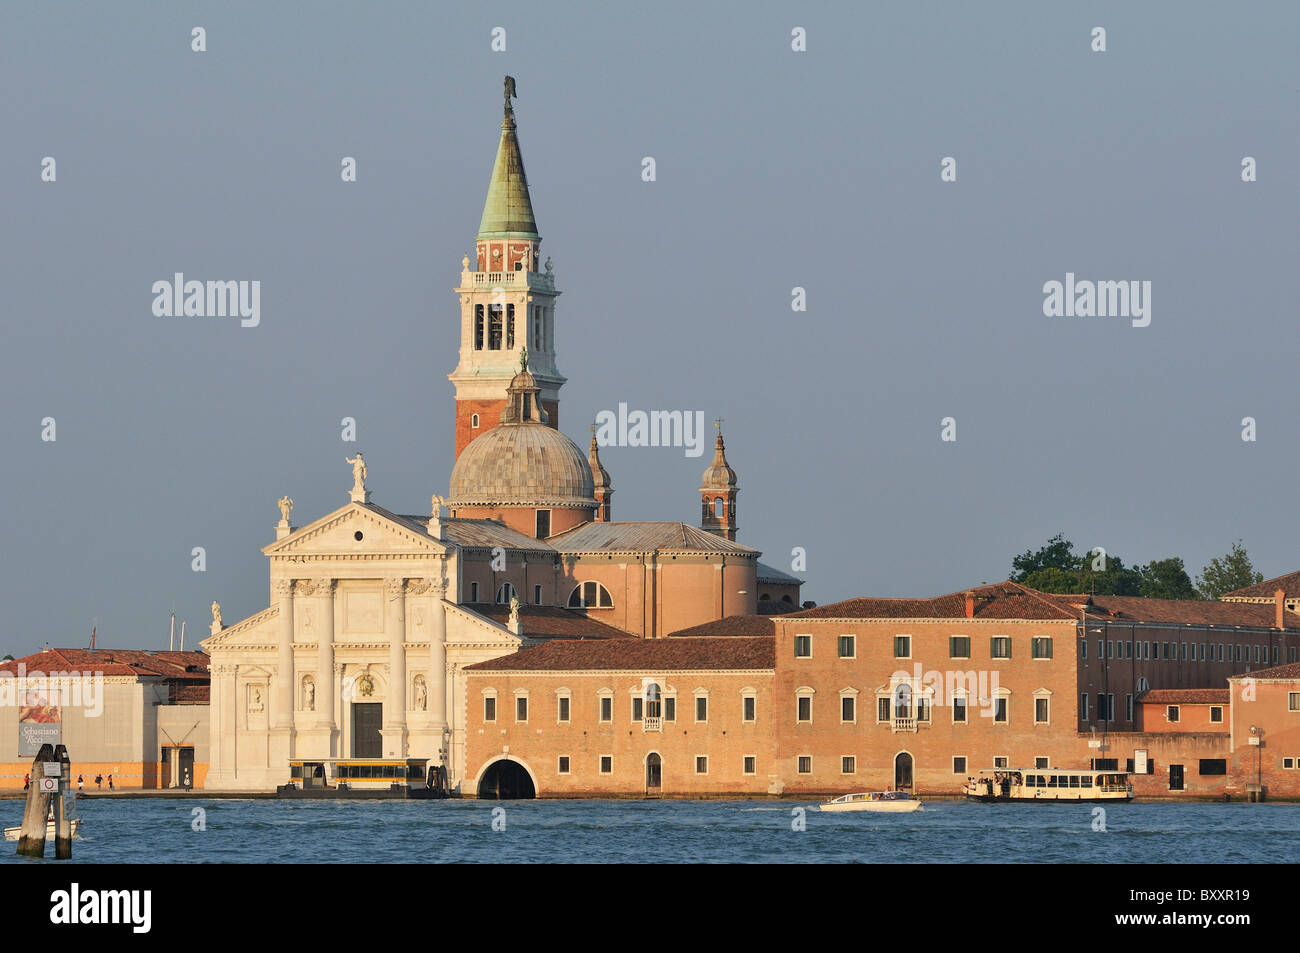 Venecia. Italia. Palladio la iglesia de San Giorgio Maggiore (Chiesa di San Giorgio Maggiore). Foto de stock